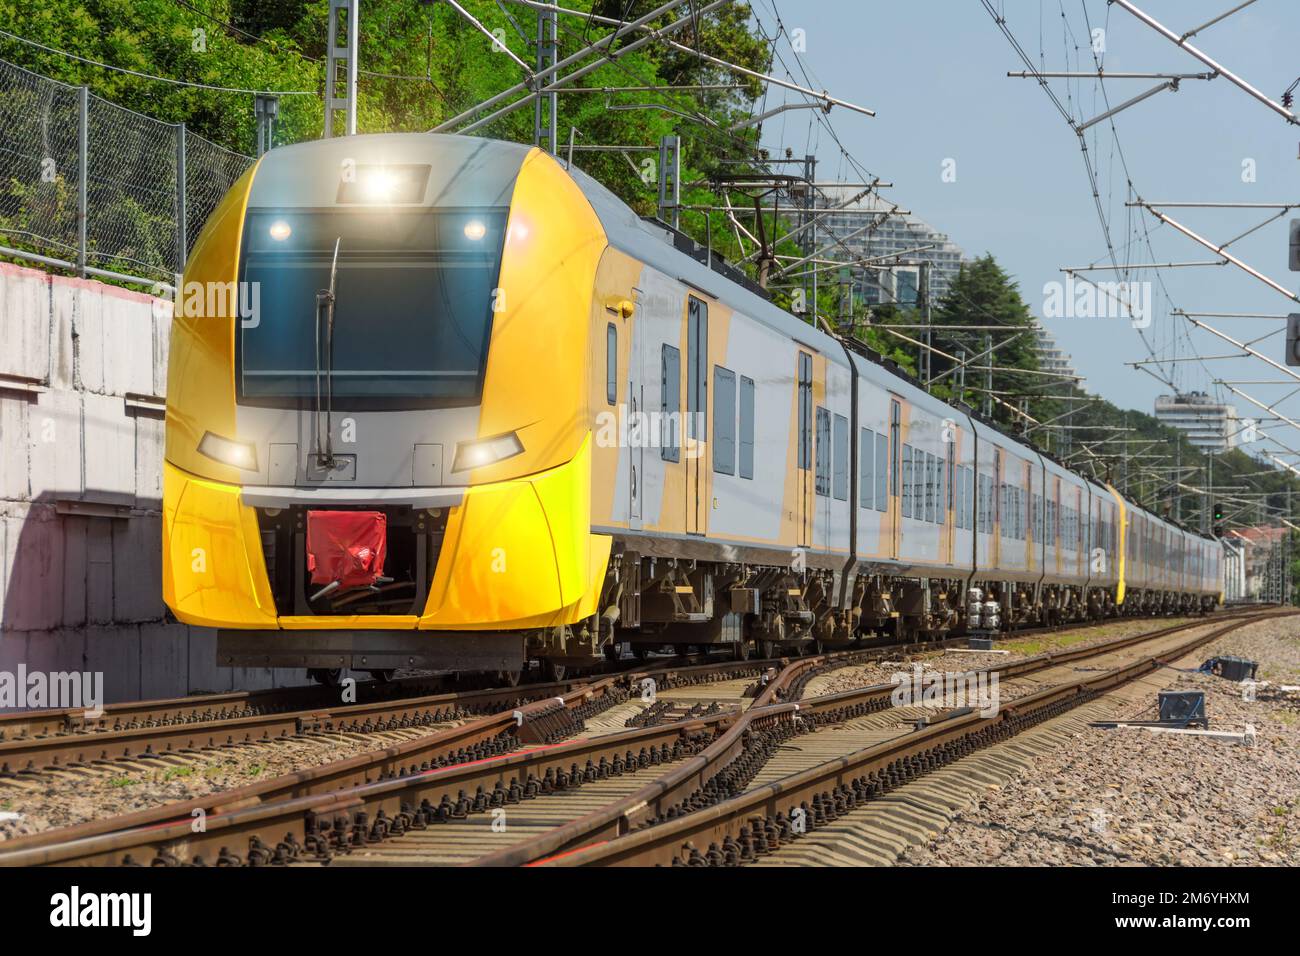 El tren eléctrico de pasajeros suburbano largo amarillo viaja en el ferrocarril Foto de stock